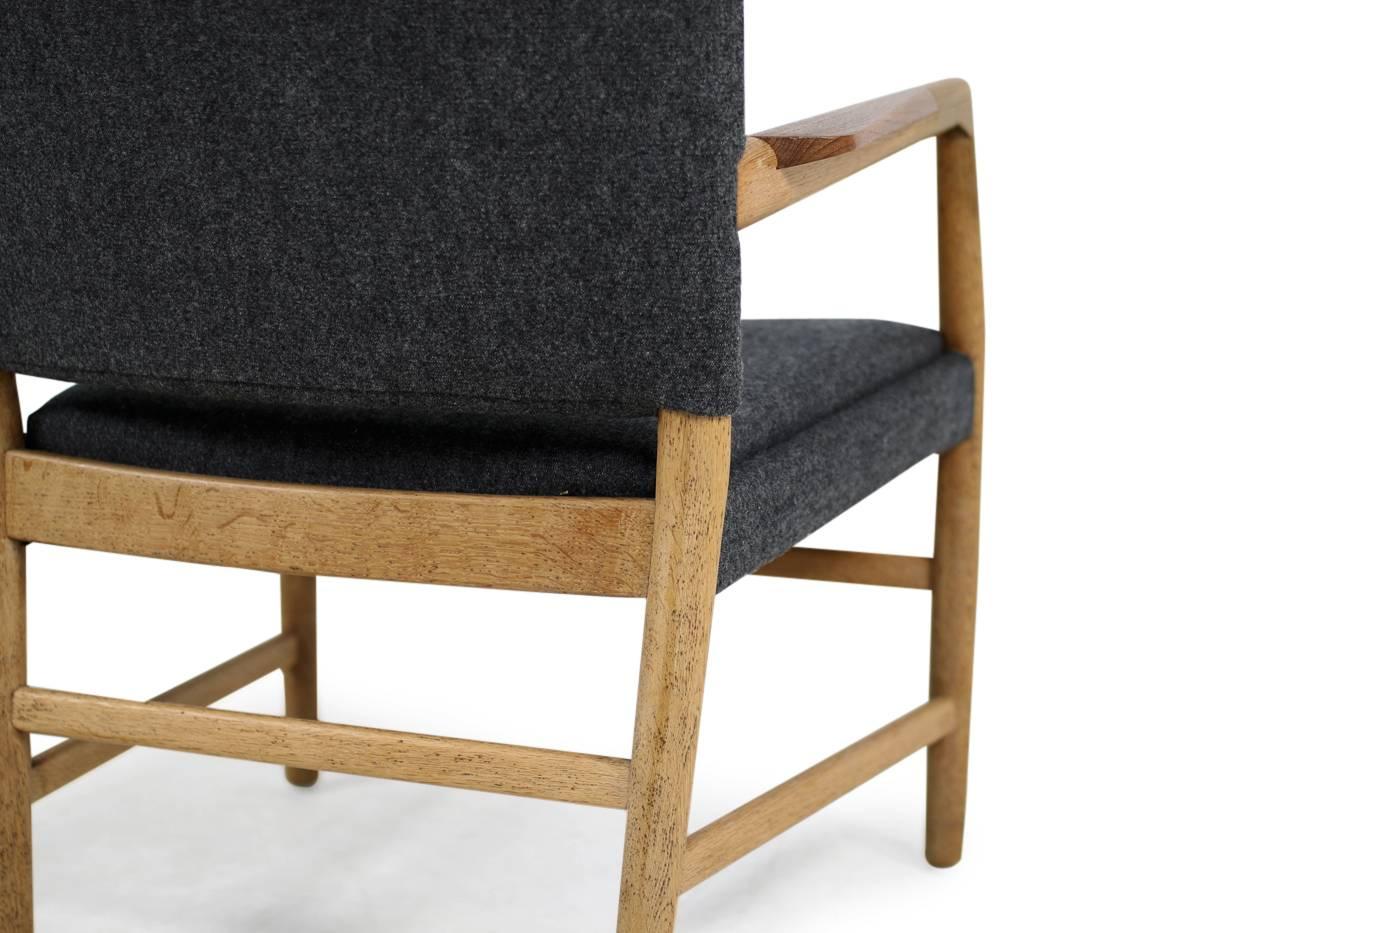 1950s Hans J. Wegner 'Town Hall' Chair Oak and Teak Mid-Century Modern Design (Teakholz)